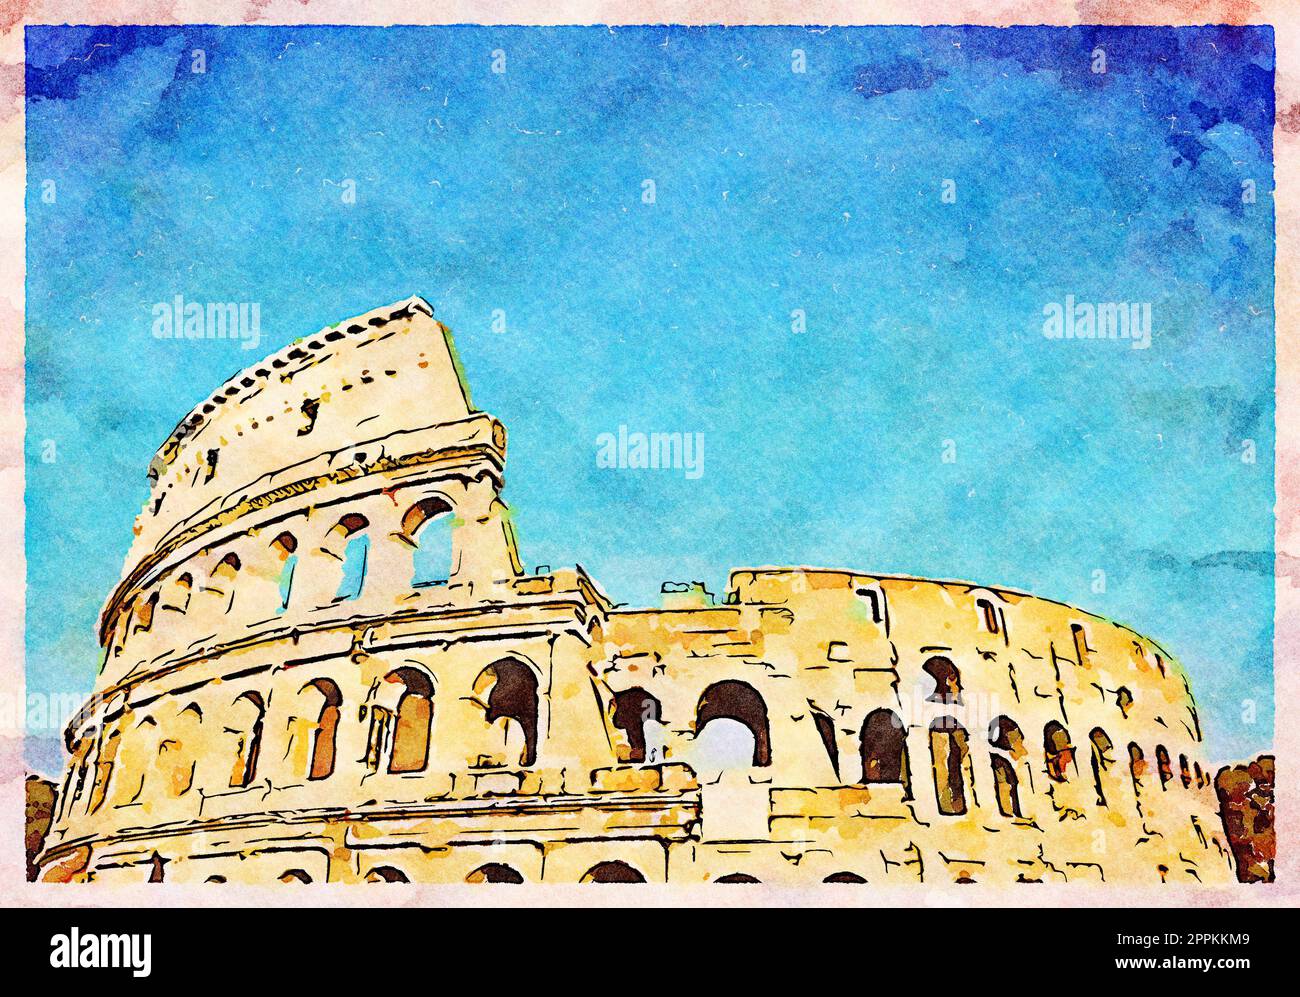 Rome, Italie - Colisée sur ciel bleu - Illustration créative, design aquarelle vintage. Banque D'Images